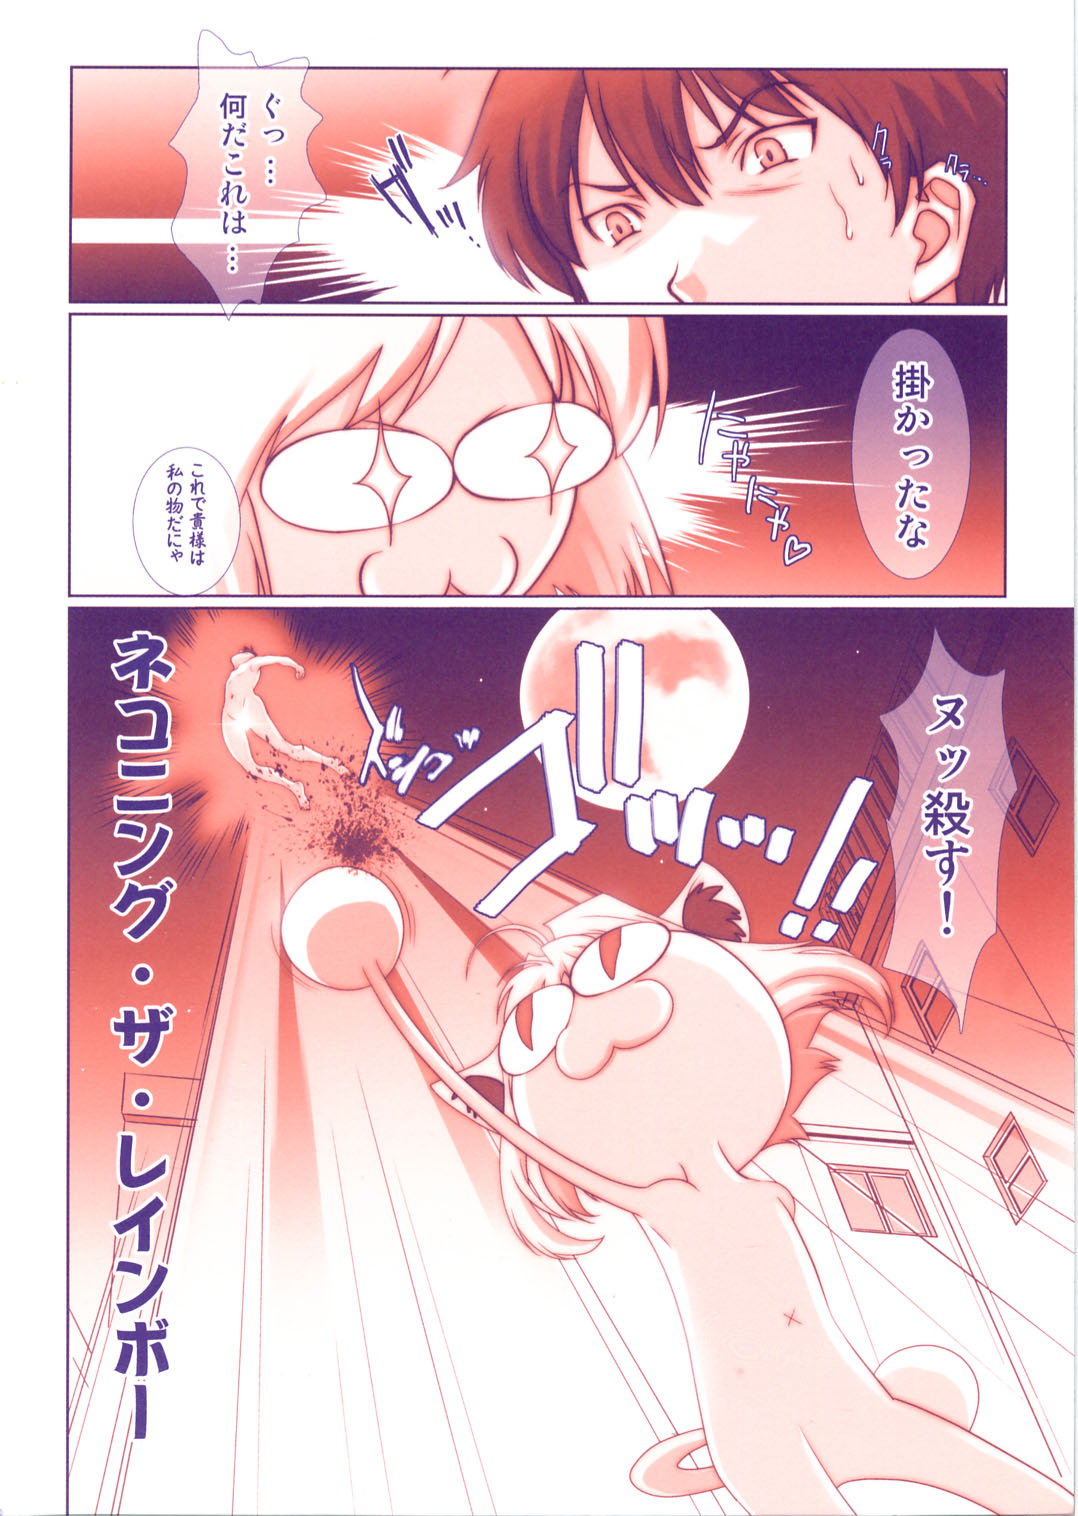 (Cレヴォ37) [恋愛漫画家 (鳴瀬ひろふみ)] ネコアルク -THE MOVIE- エイプリルフールをぶっ飛ばせ!! (月姫)